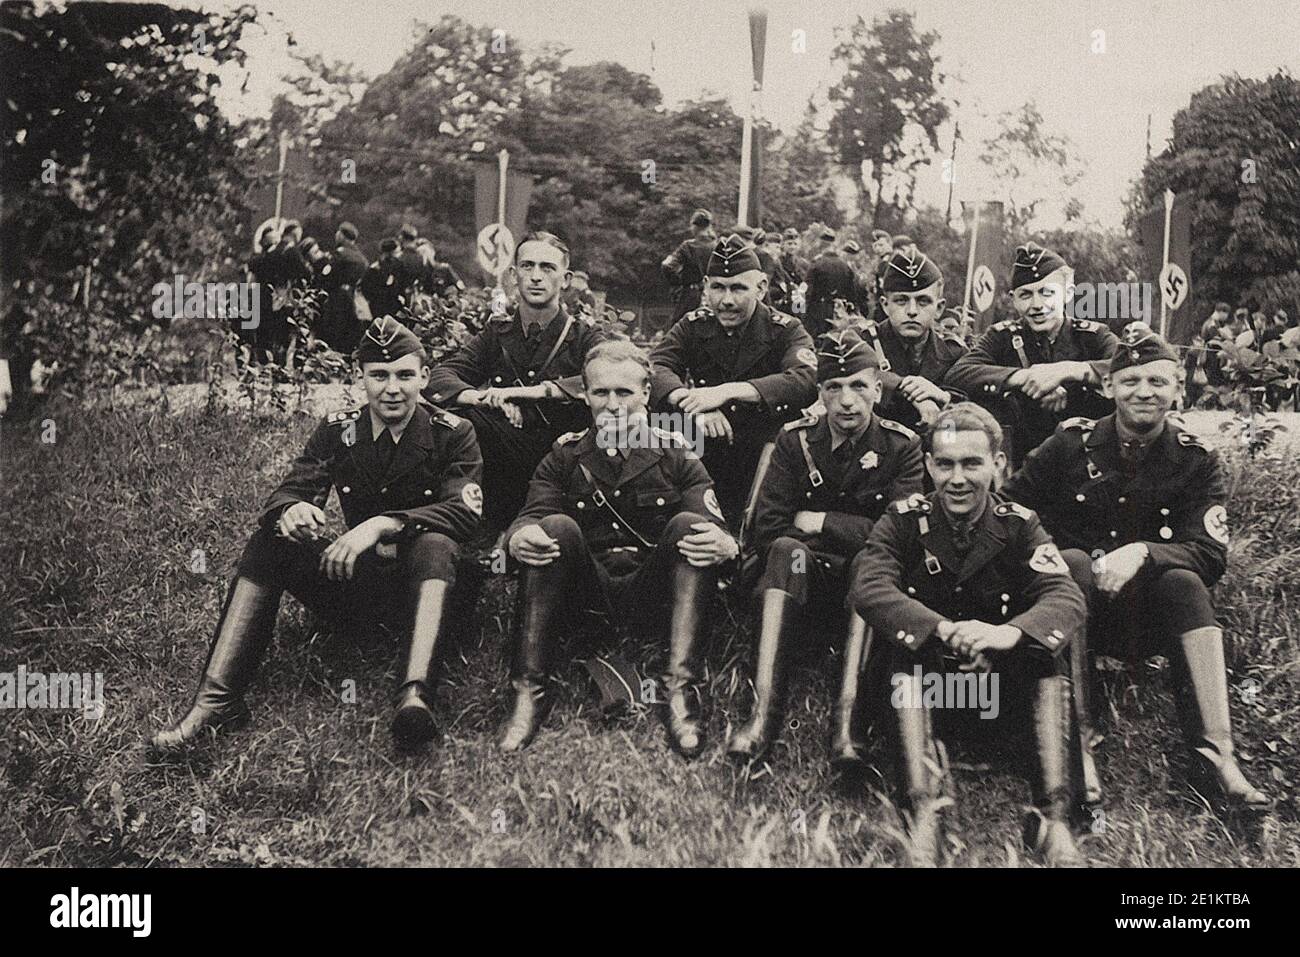 Eine Gruppe von Menschen aus Deutschen Schutzstaffel (SS) Nach dem festlichen Jubiläum der Nsdap. Vorkriegszeit. Stockfoto